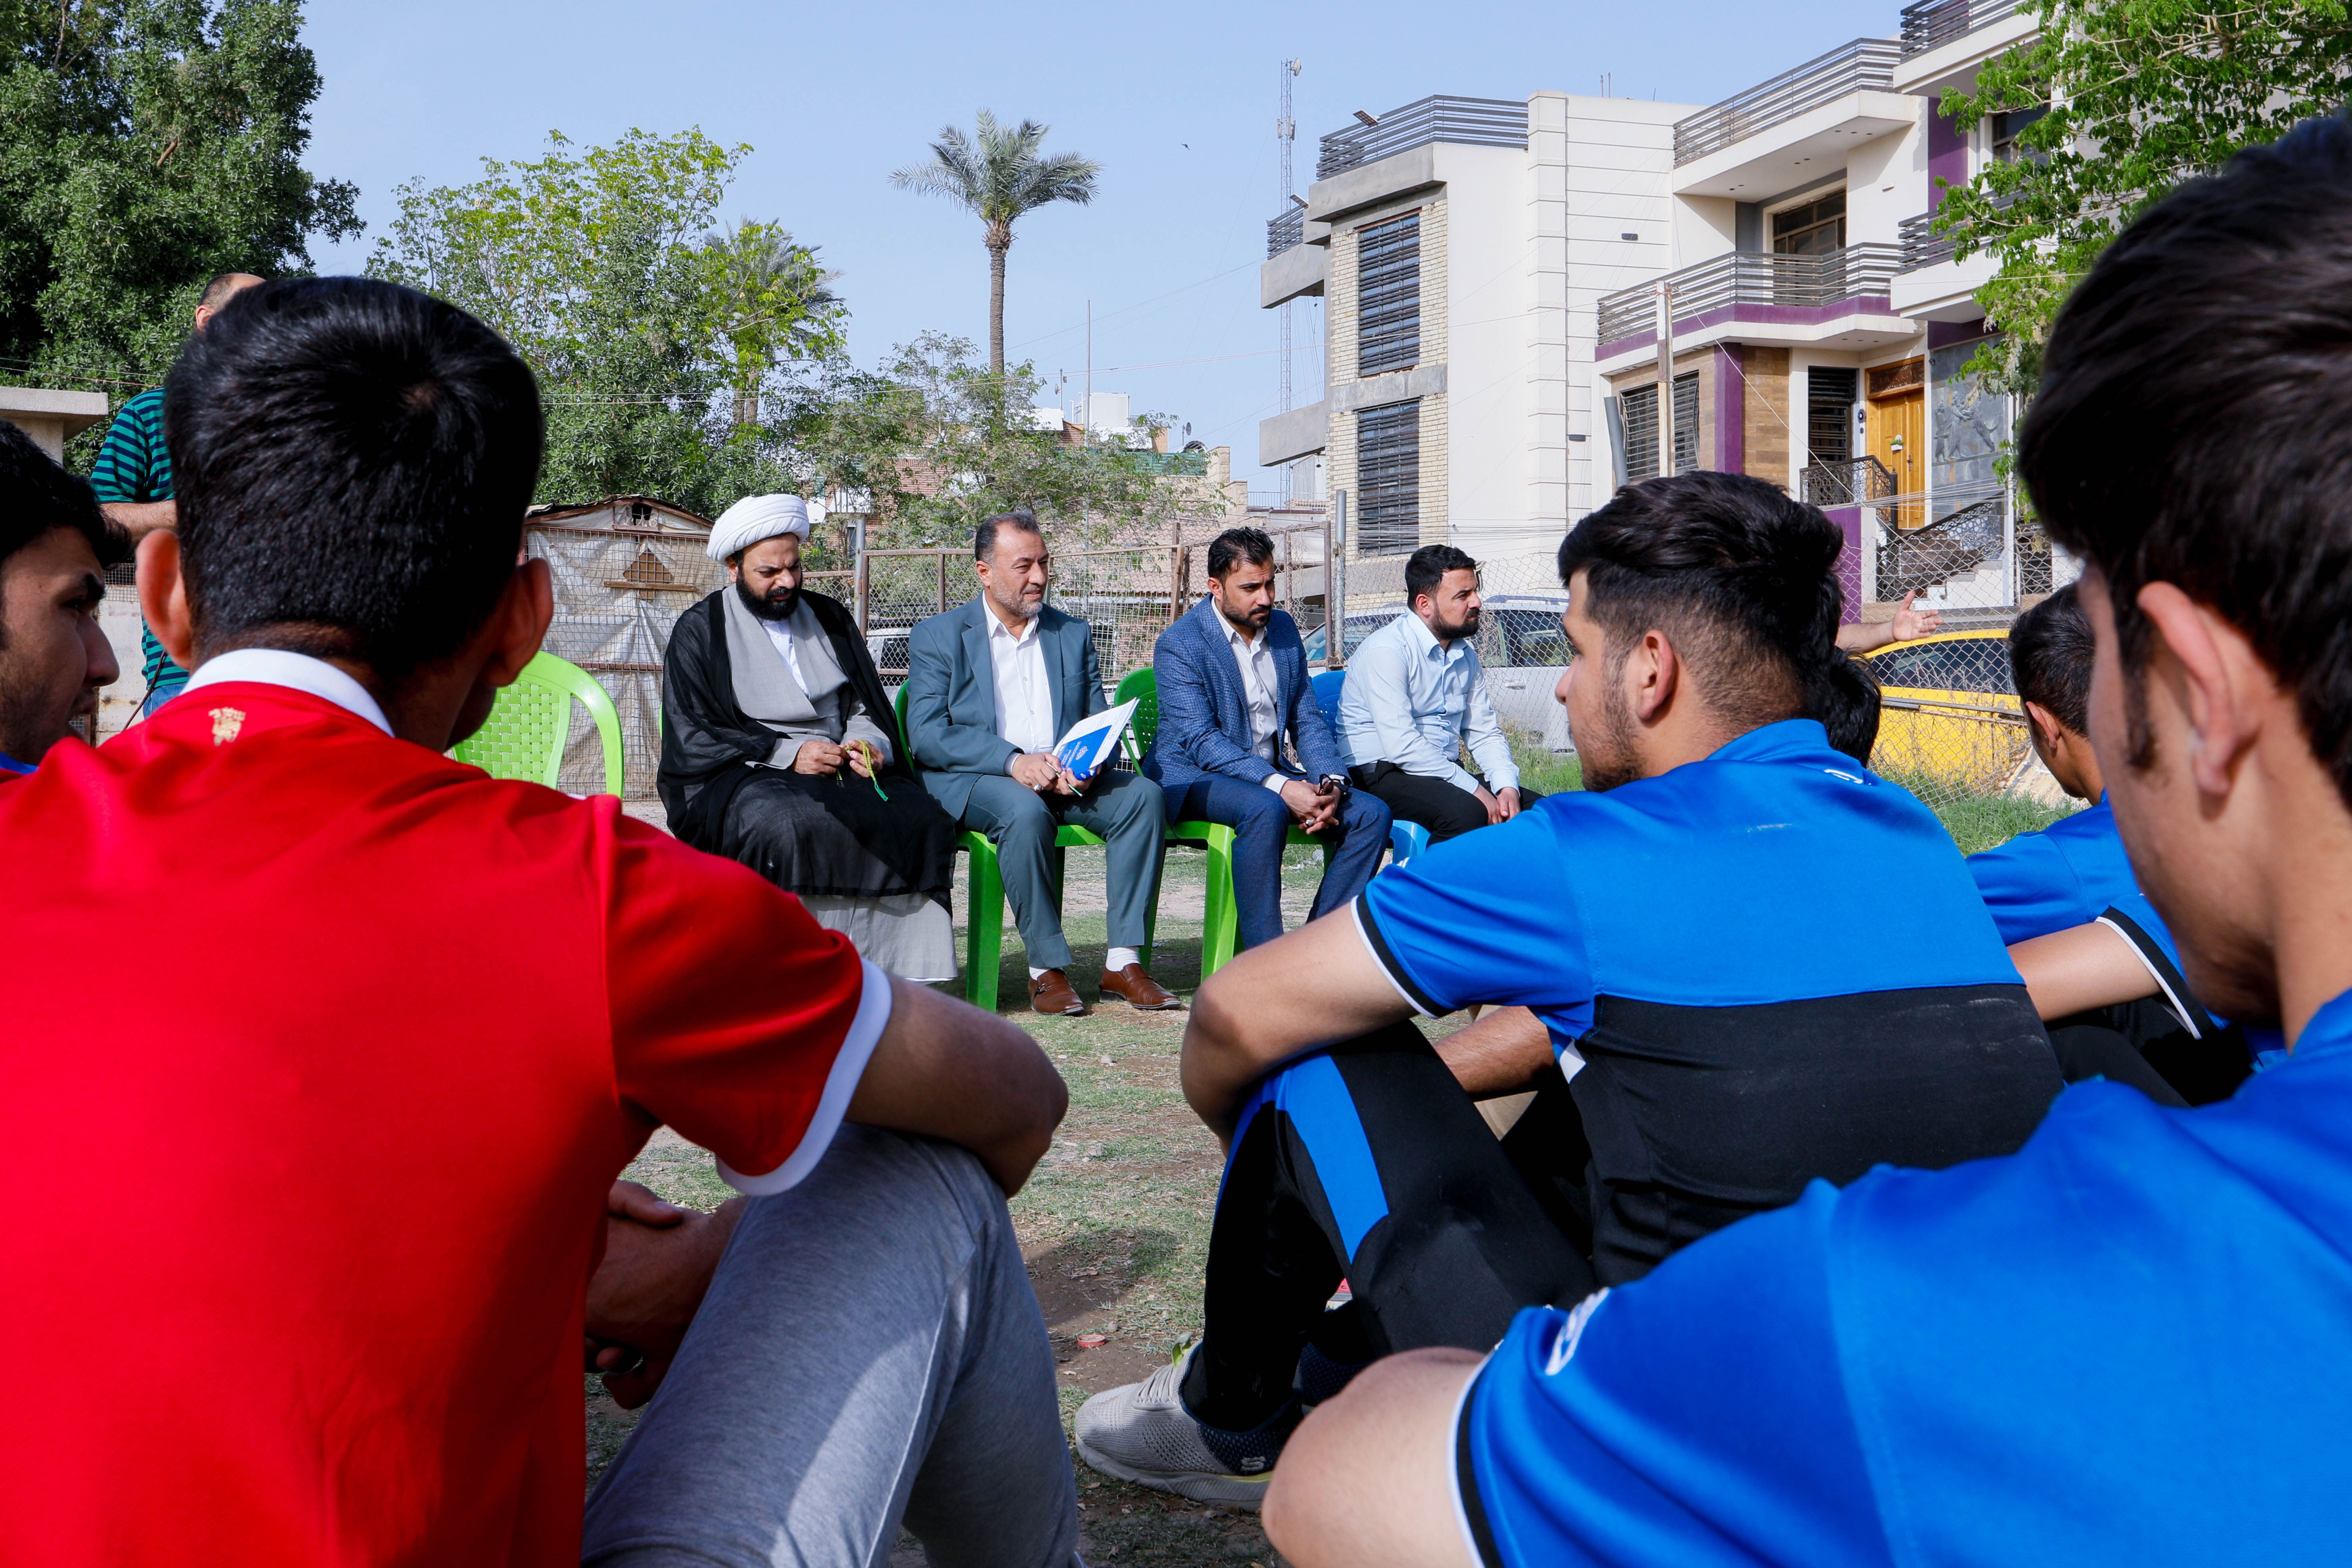 فرع بغداد ونادي العراق الرياضي يقيمان دورات قرآنية تعليمية للشباب